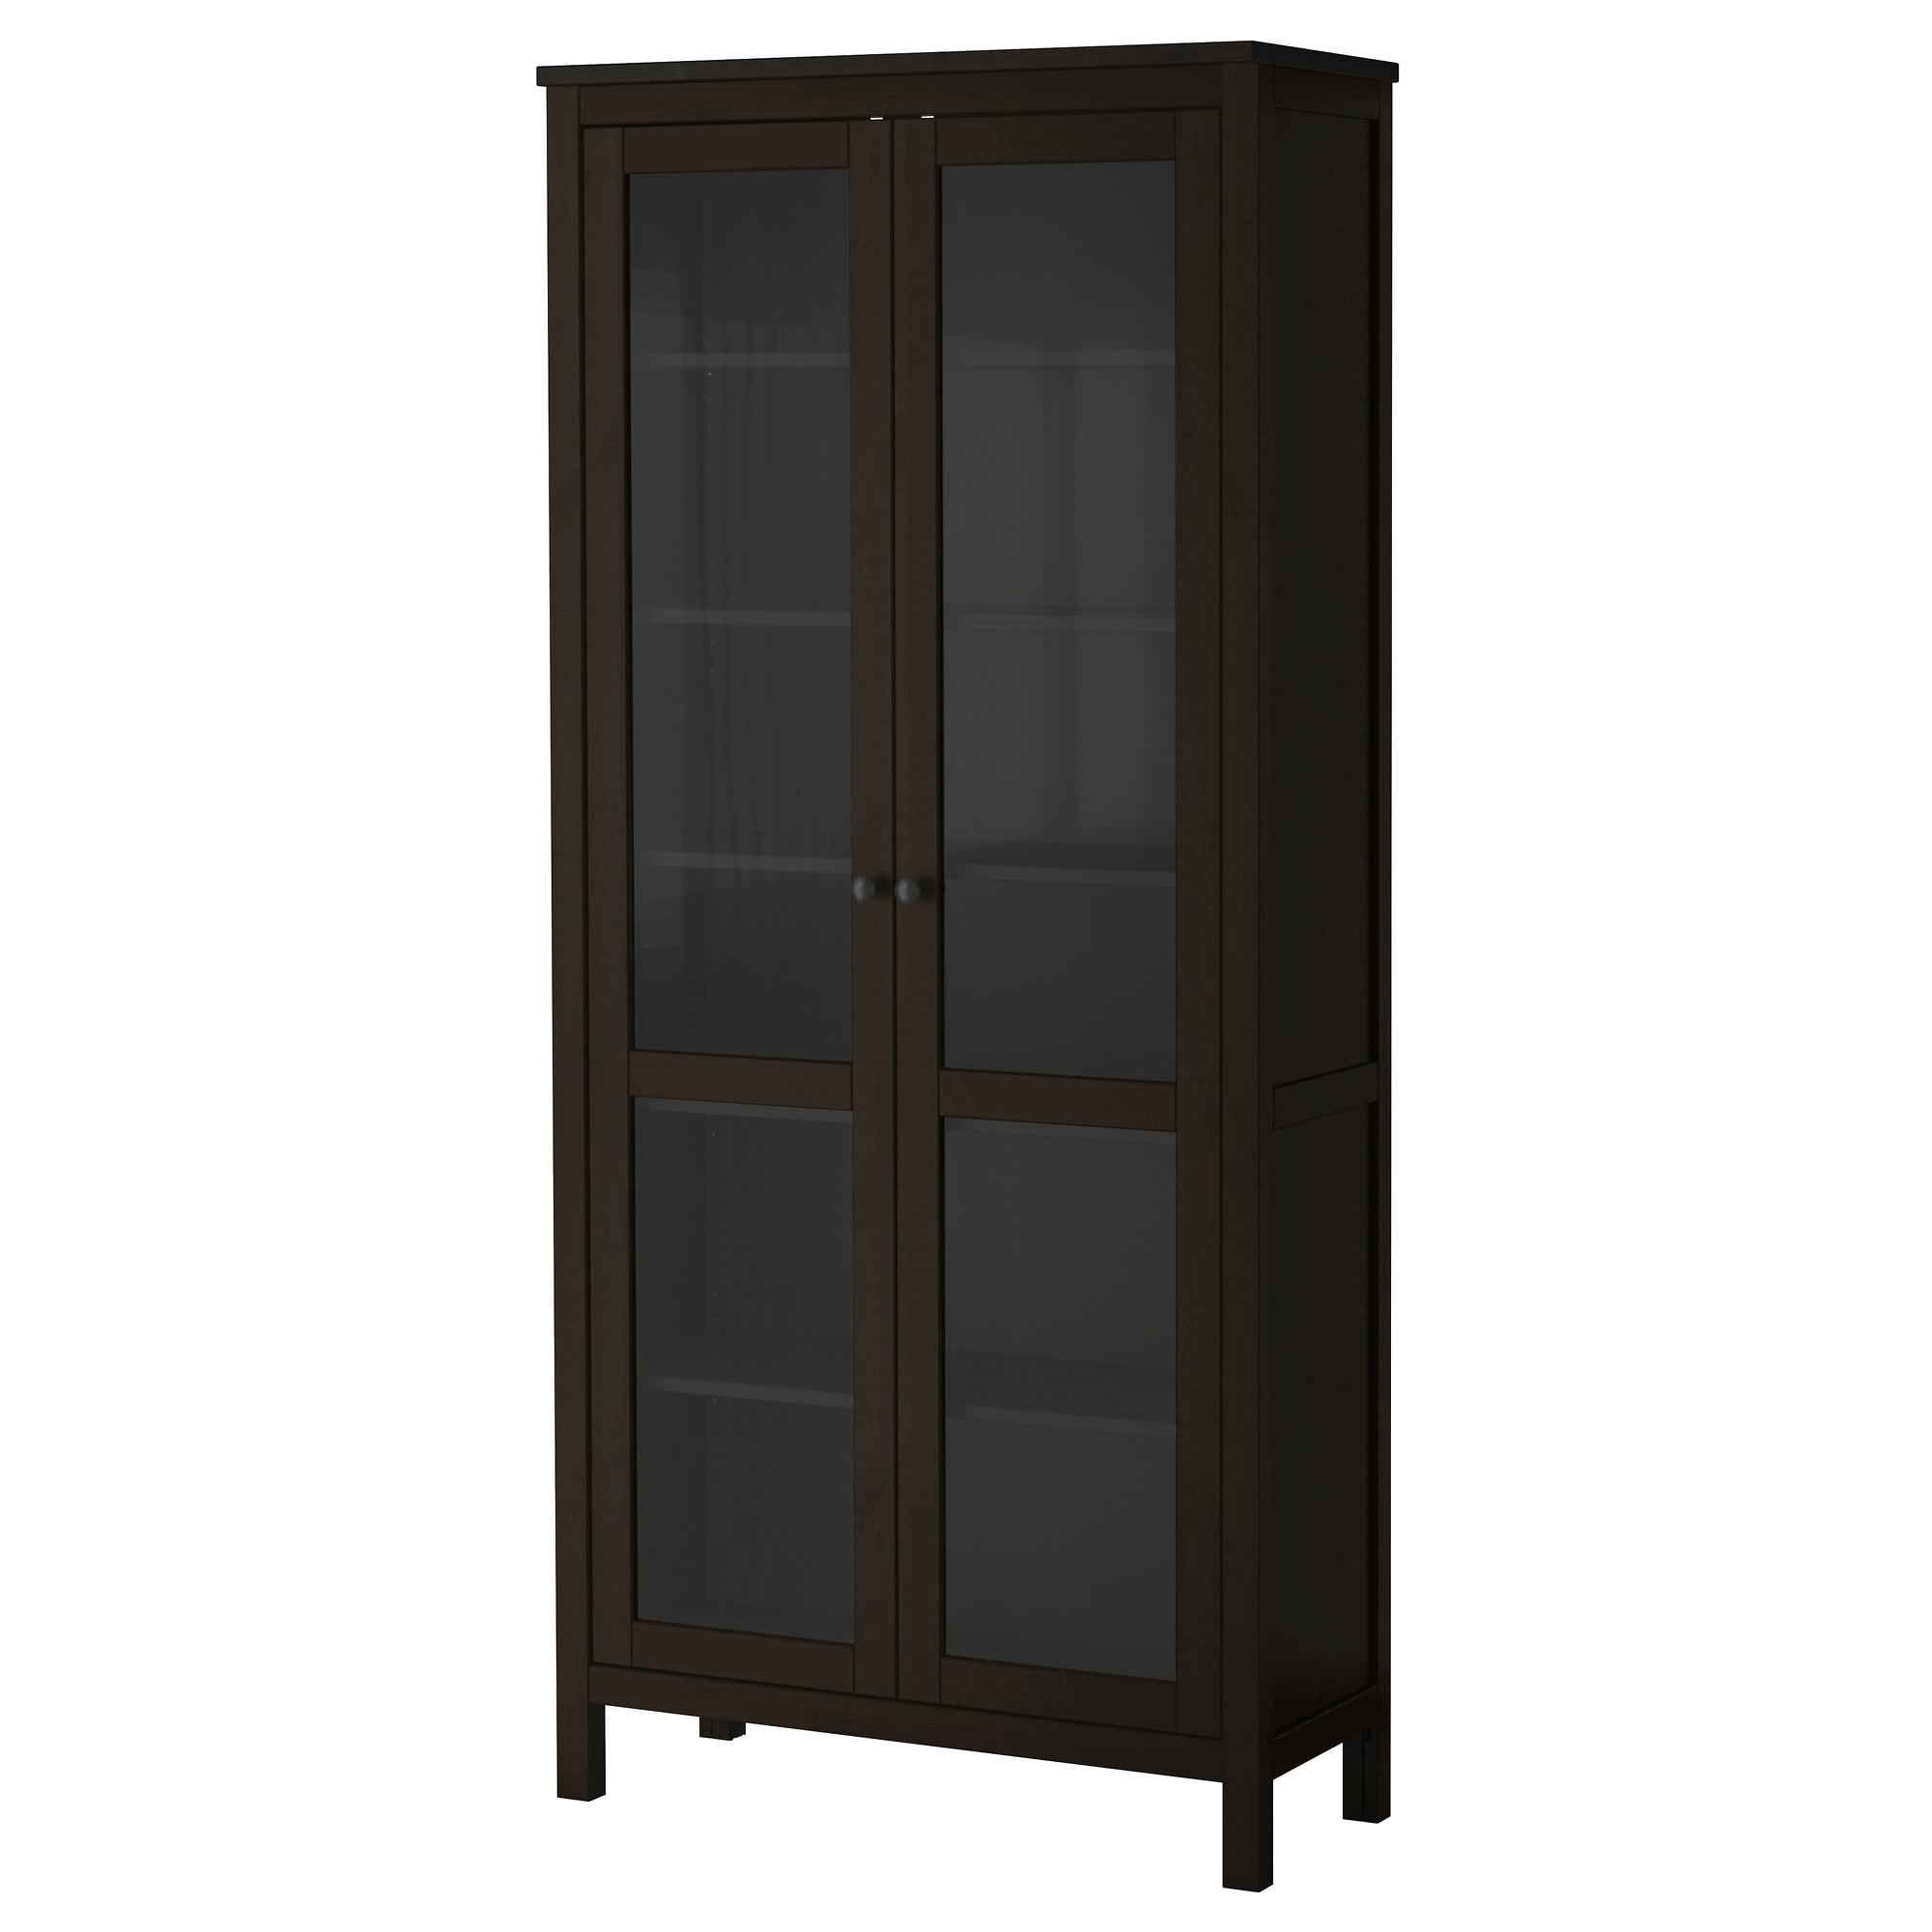 Best ideas about Ikea Cabinet Doors
. Save or Pin HEMNES Glass door cabinet Black brown 90x197 cm IKEA Now.